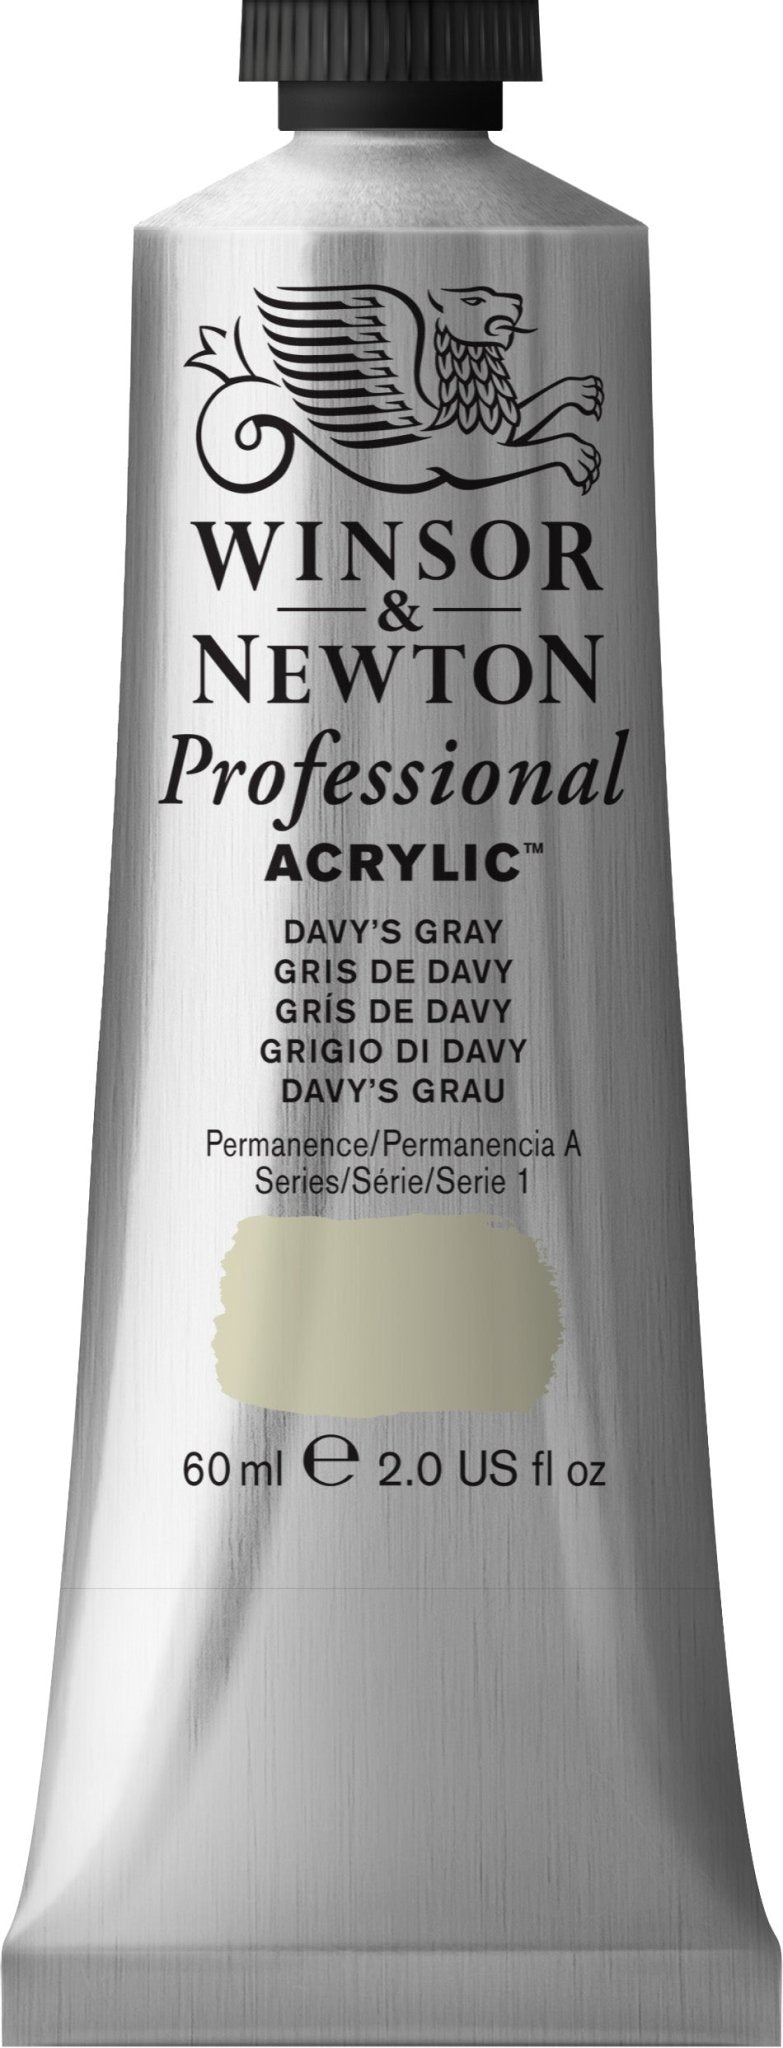 W & N Professional Acrylic 60ml Davy's Grey - theartshop.com.au